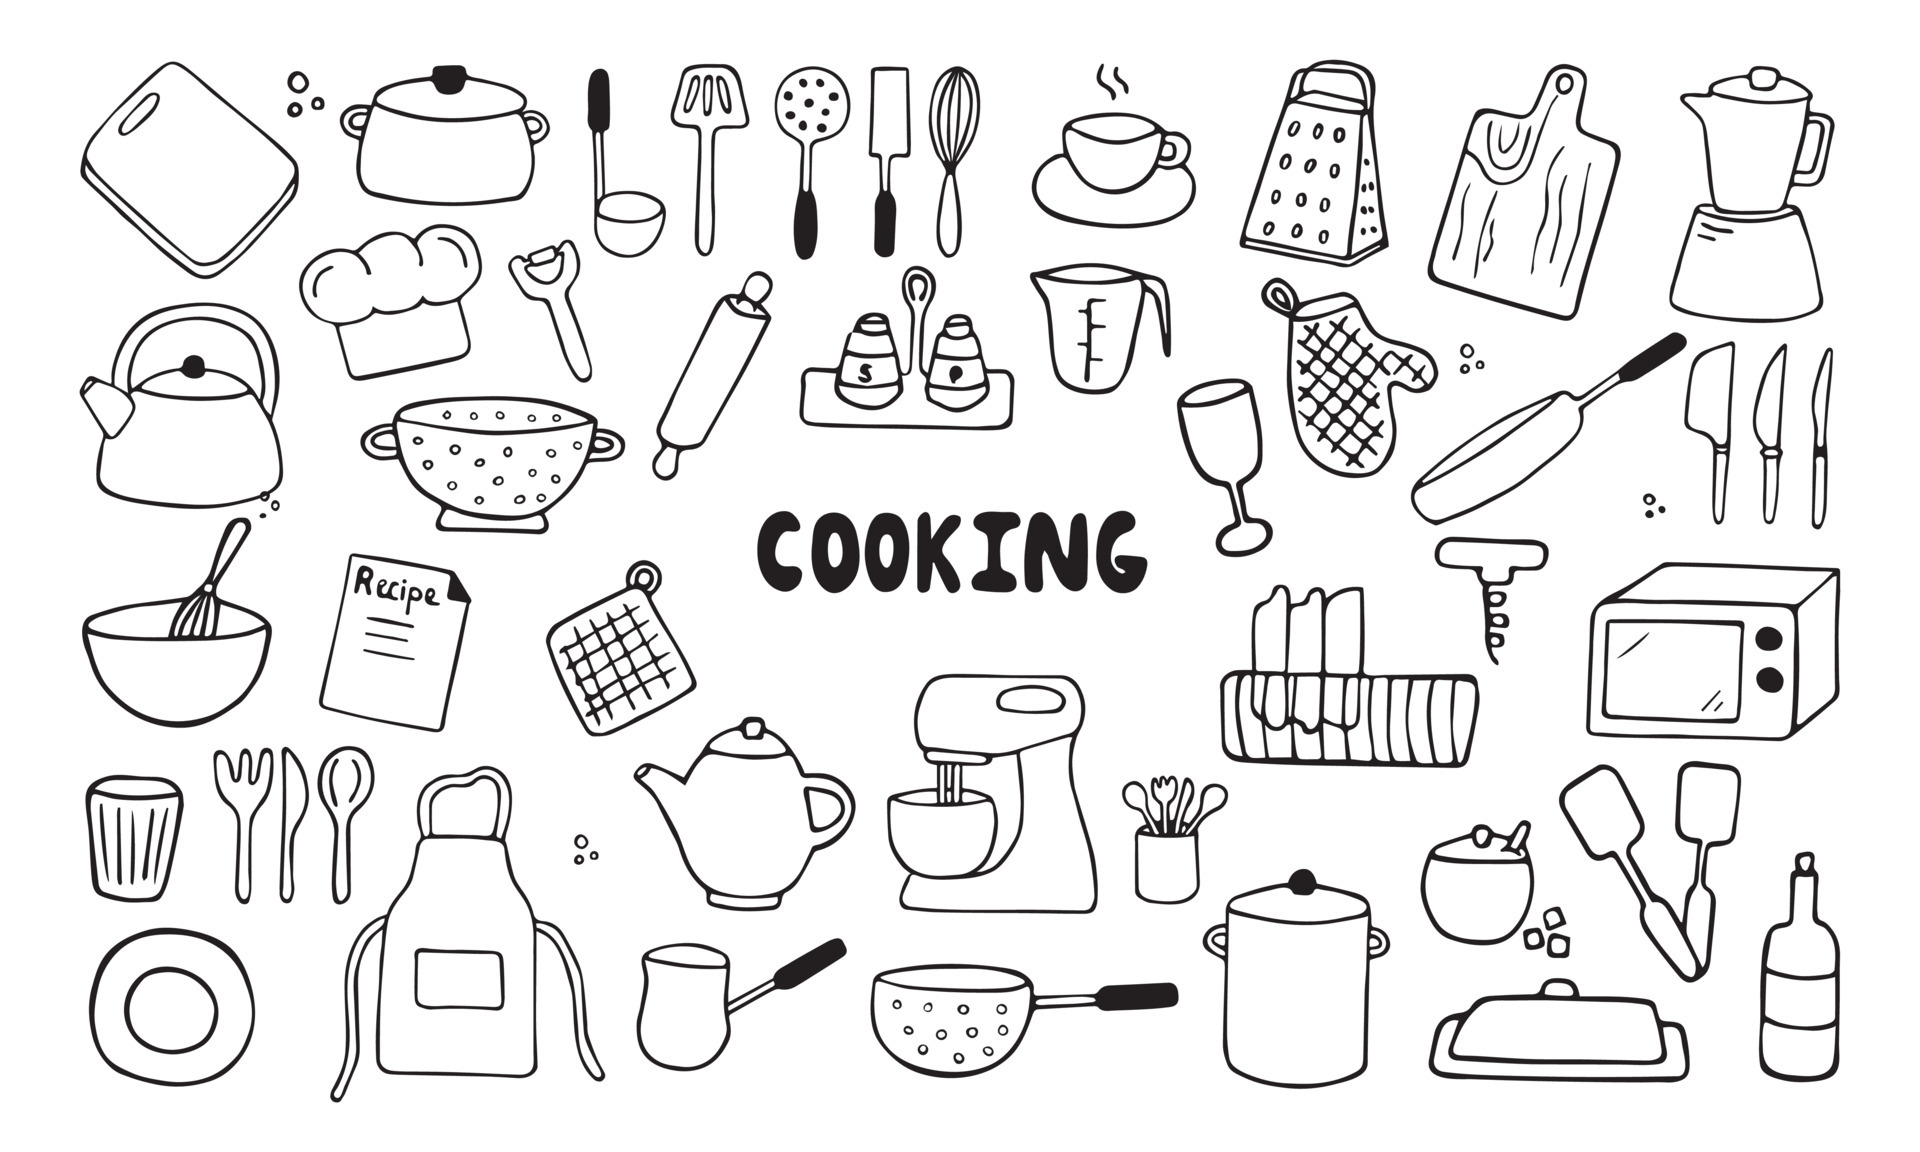 Xem ngay các bức tranh nháp về dụng cụ nhà bếp và các vật dụng cần thiết khác để thu hút bạn về món ăn và ẩm thực! Các chuyên gia cũng sẽ có những lời khuyên hữu ích để tạo ra các món ăn ngon nhất, hãy xem ngay để biết thêm chi tiết!